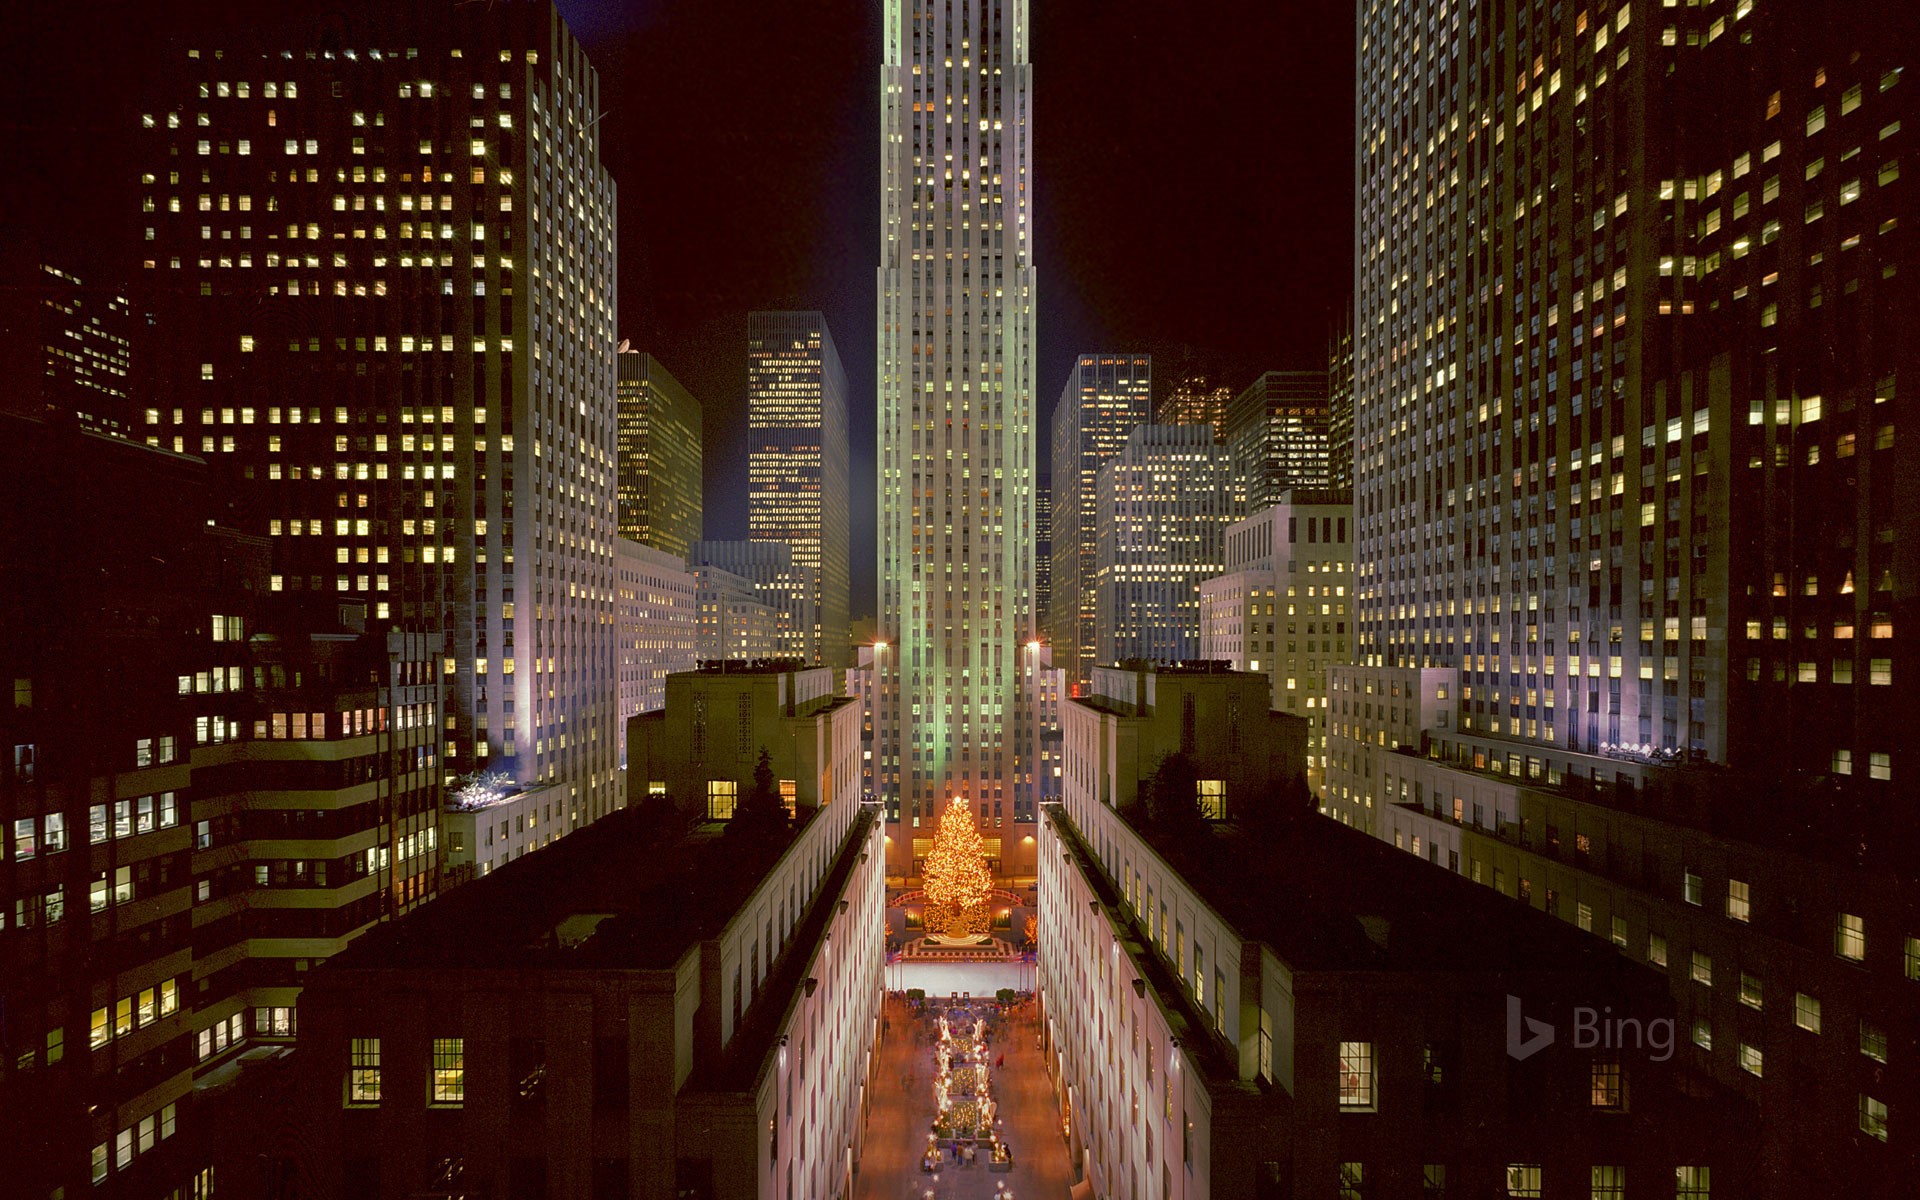 Lighting of the tree at Rockefeller Center in New York City